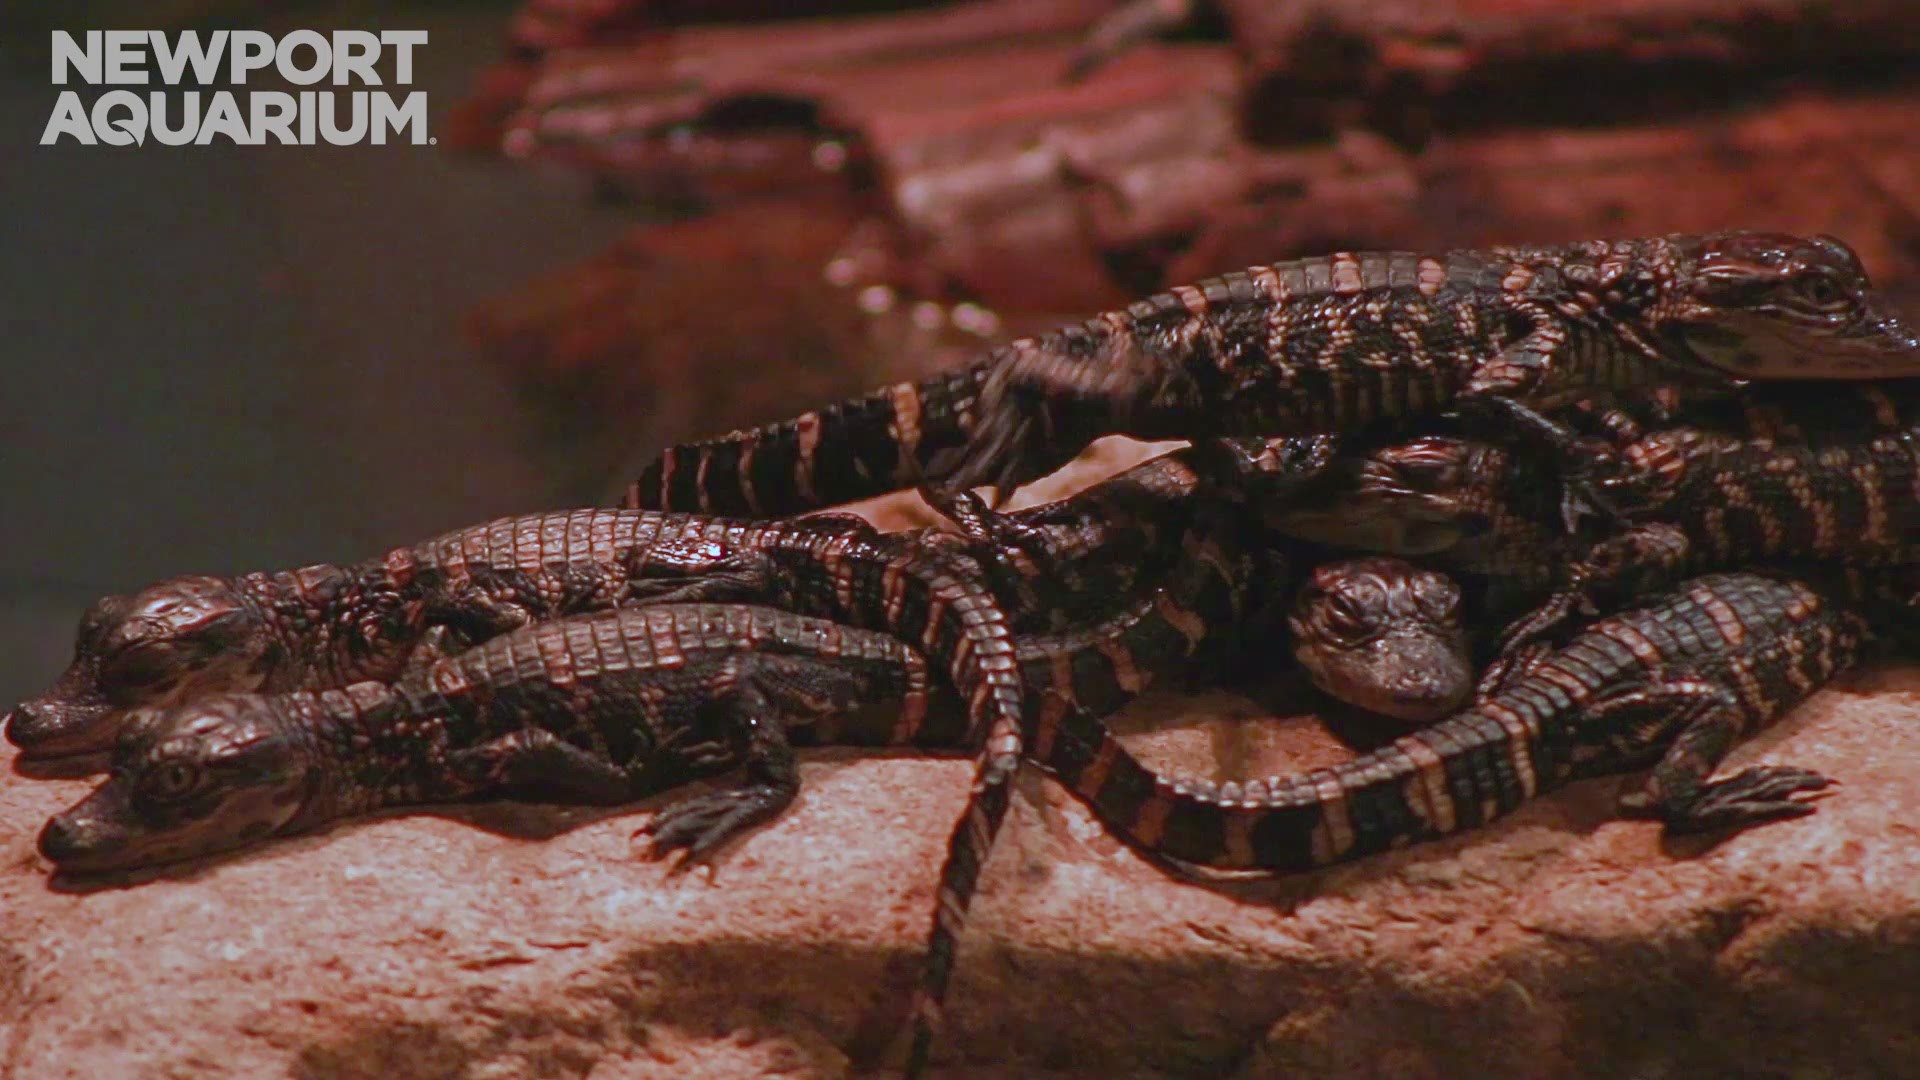 Newport aquarium shares video of new baby alligators